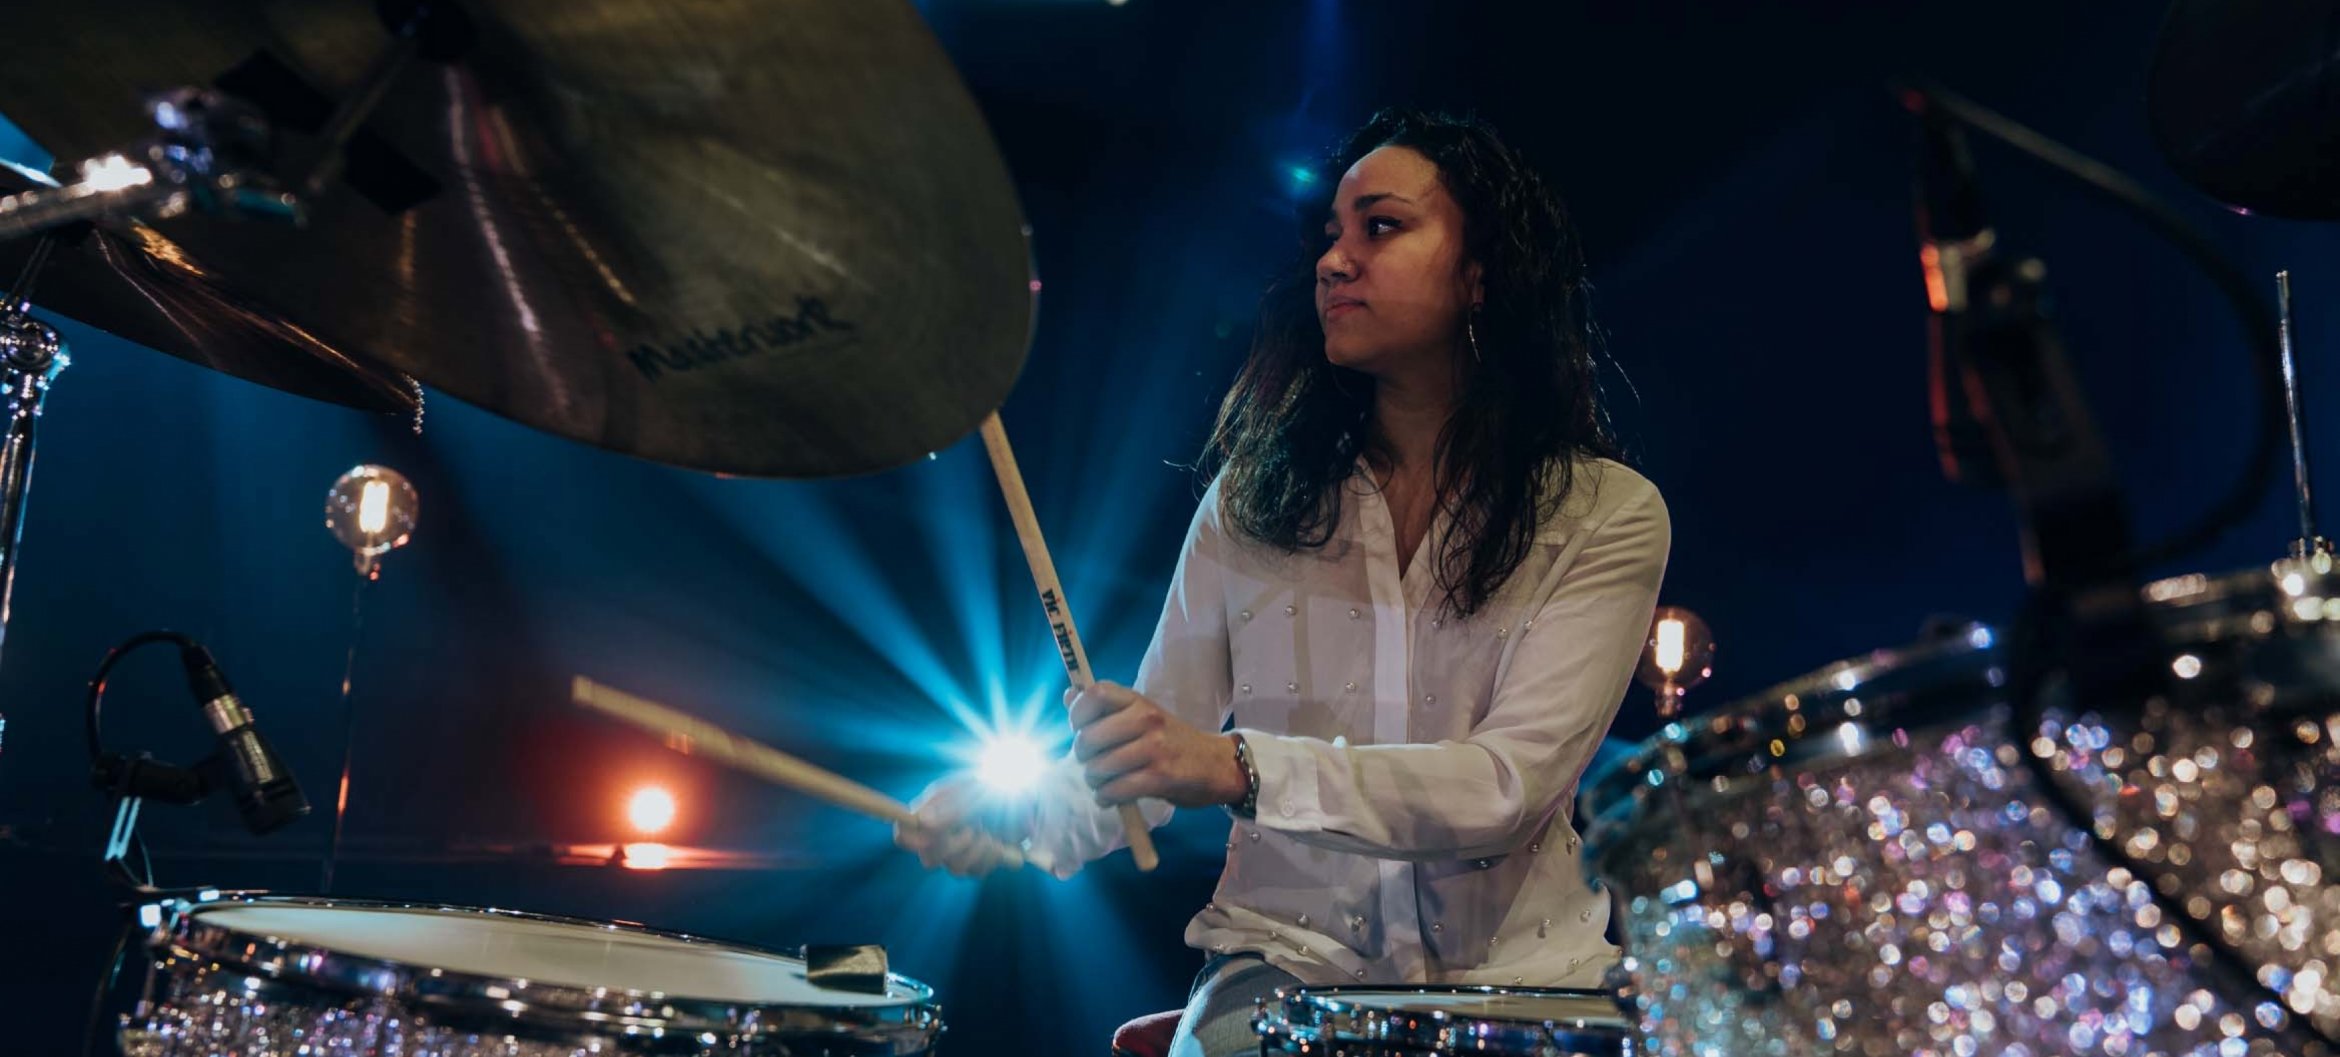 Zoë van Beek on drums